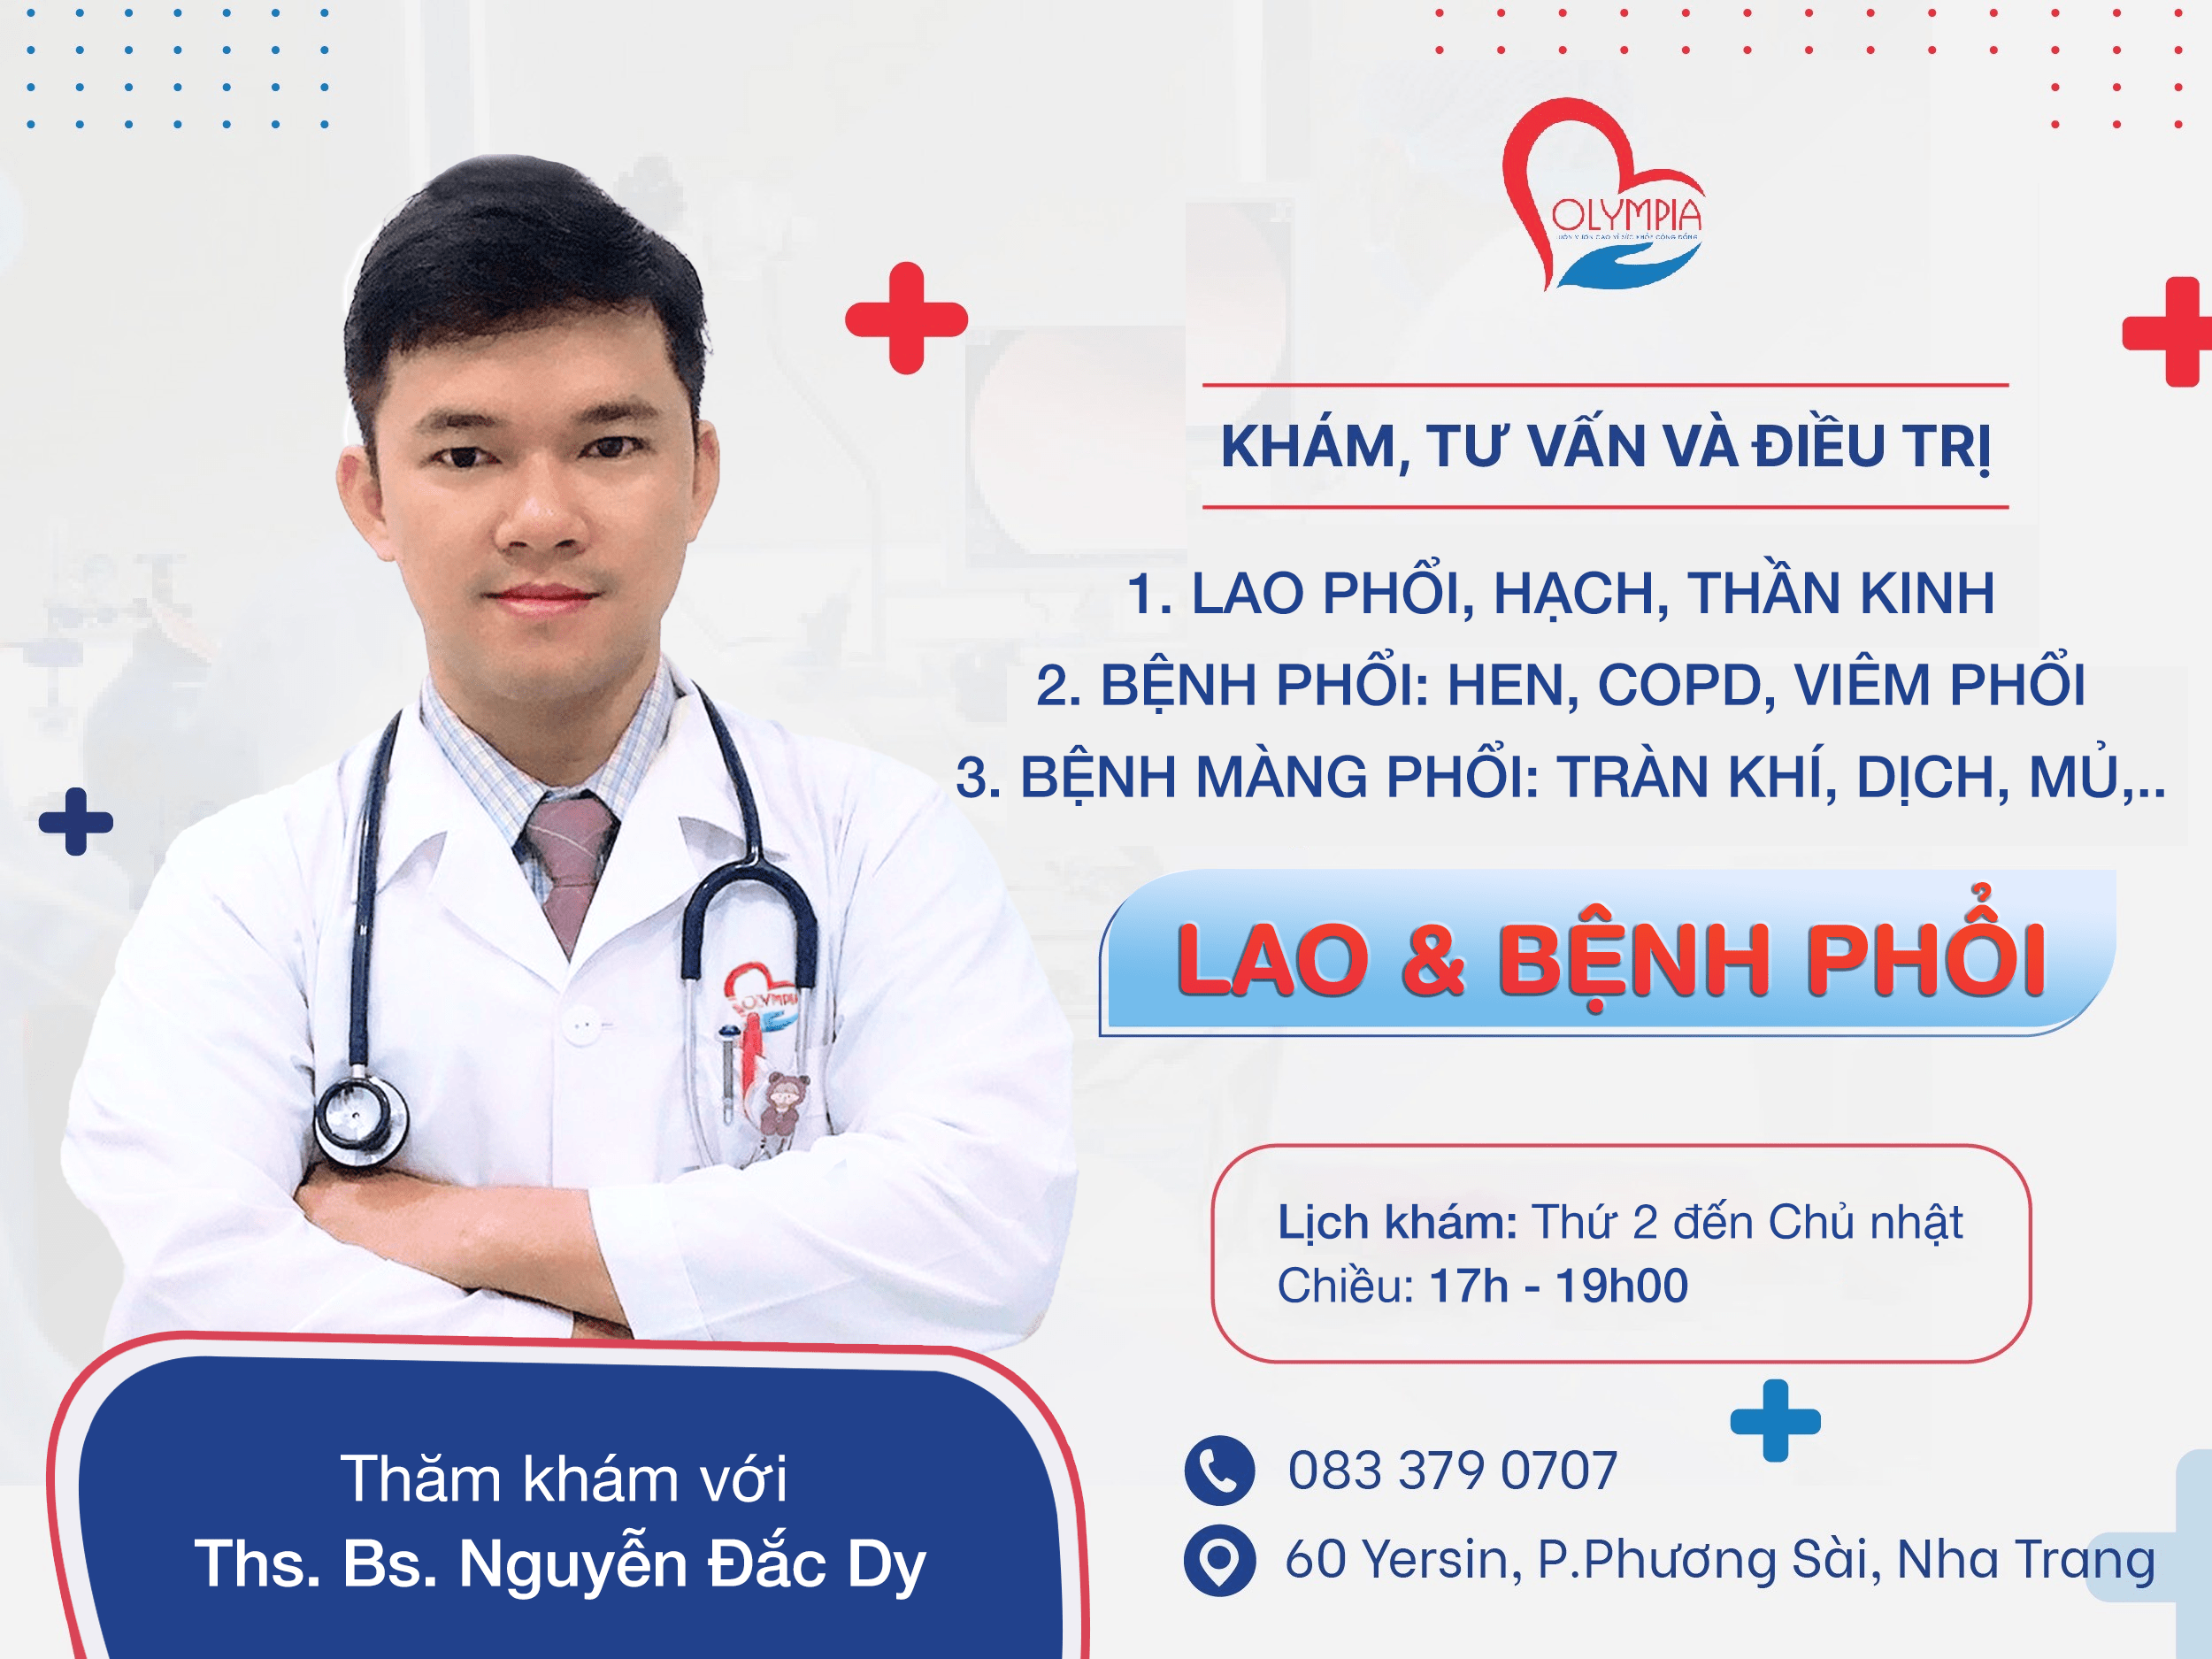 bác sĩ Nguyễn Đắc Dy - bệnh phổi - lao phổi - phòng khám olympia - bác sĩ 2024 nha trang